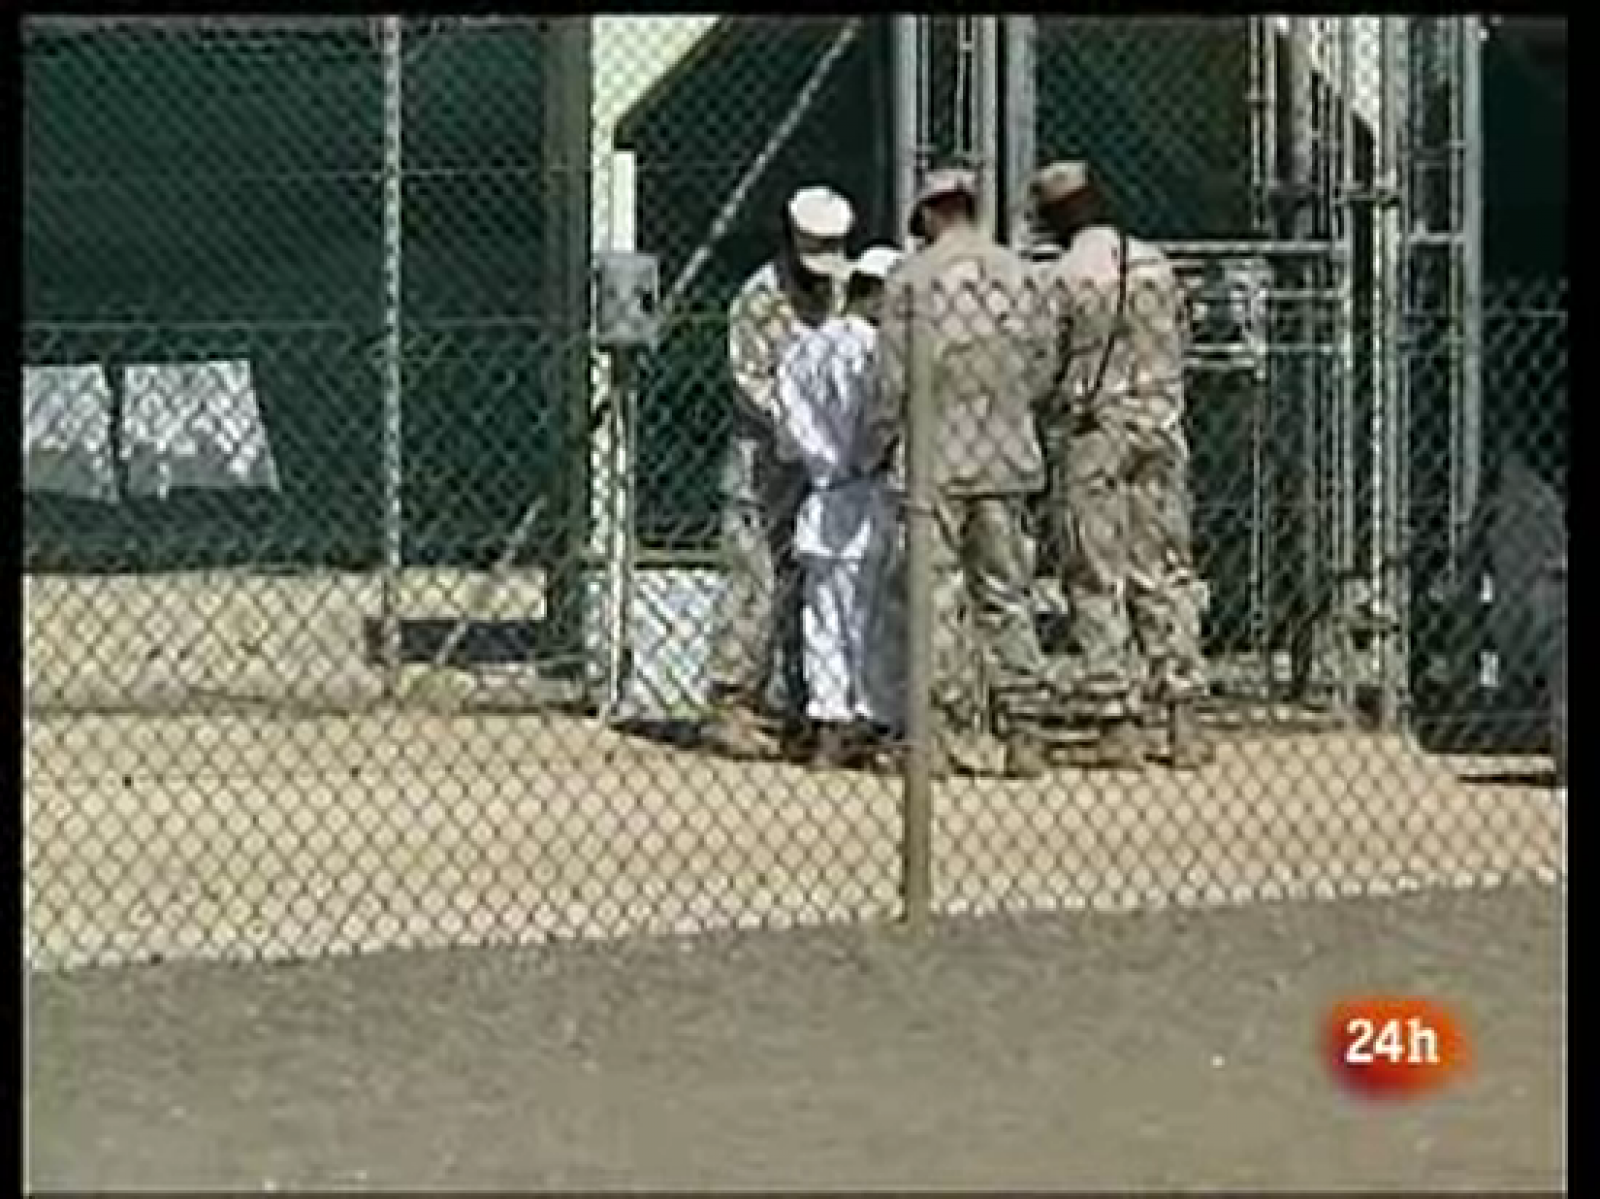 El Gobierno de EE.UU. anunciará este martes sus planes para comprar una prisión de Illinois con la intención de enviar a una cantidad limitada de reos desde la prisión militar de Guantánamo.